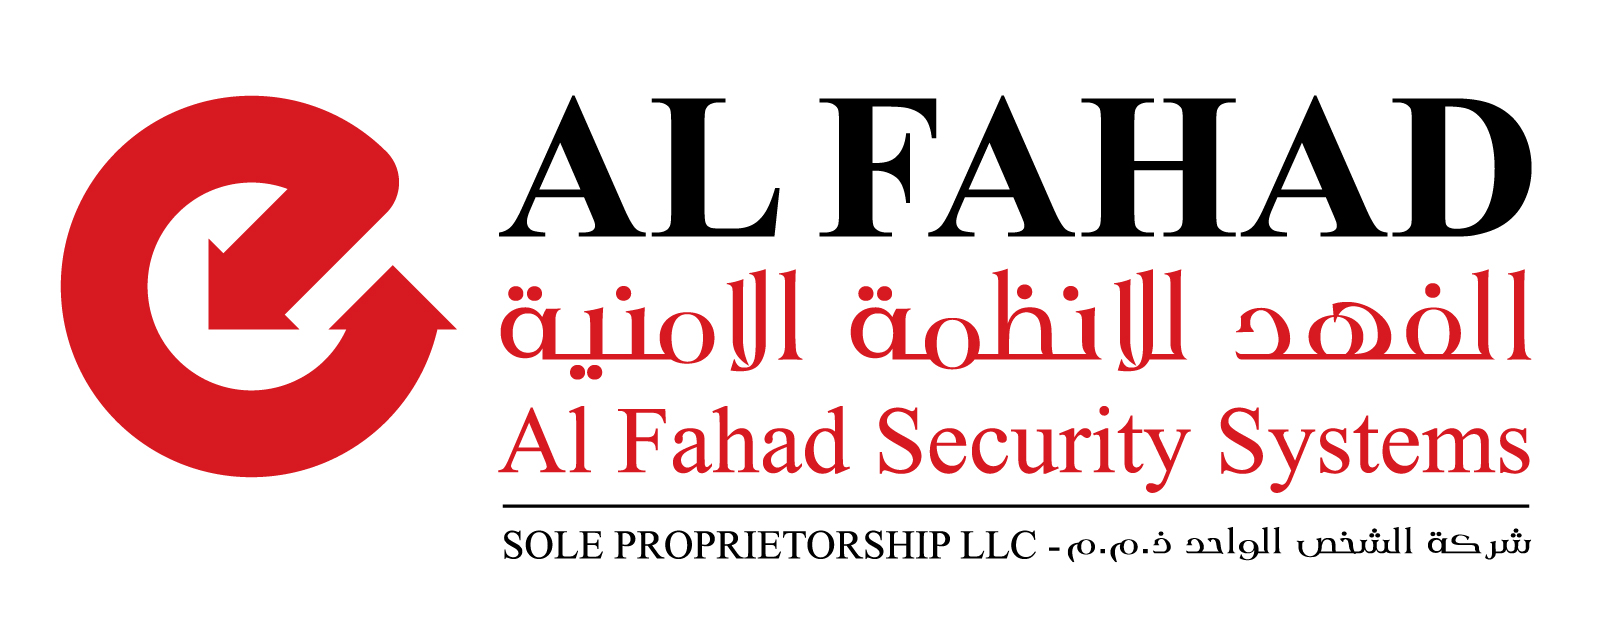 Al-Fahad-Security-Systems-01.jpg